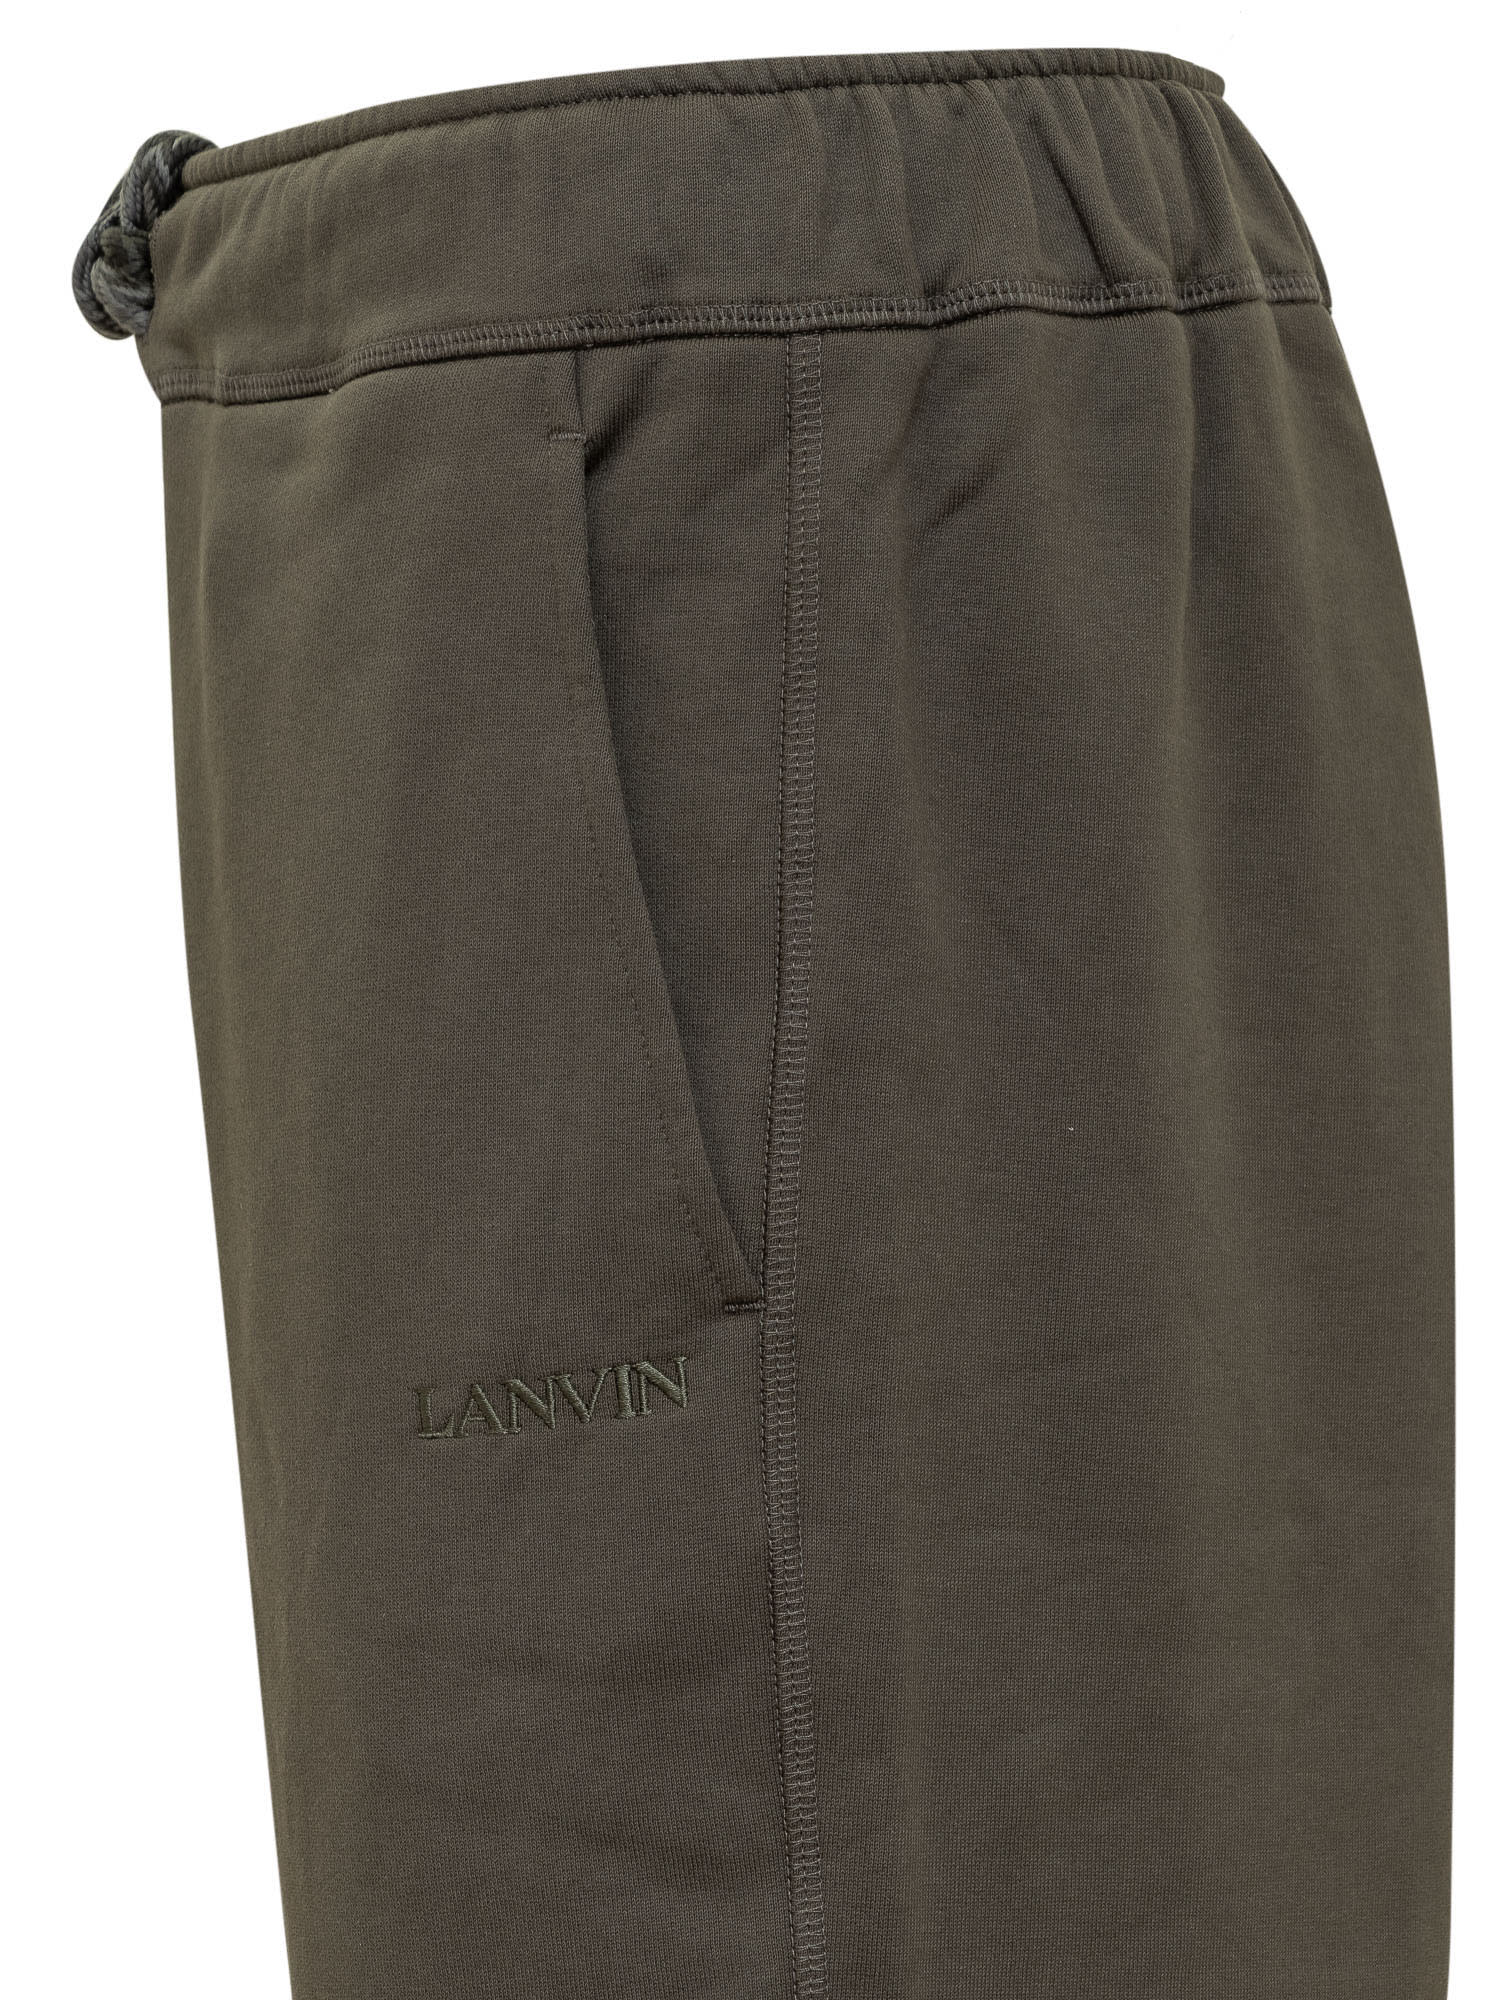 Shop Lanvin Trousers In Loden